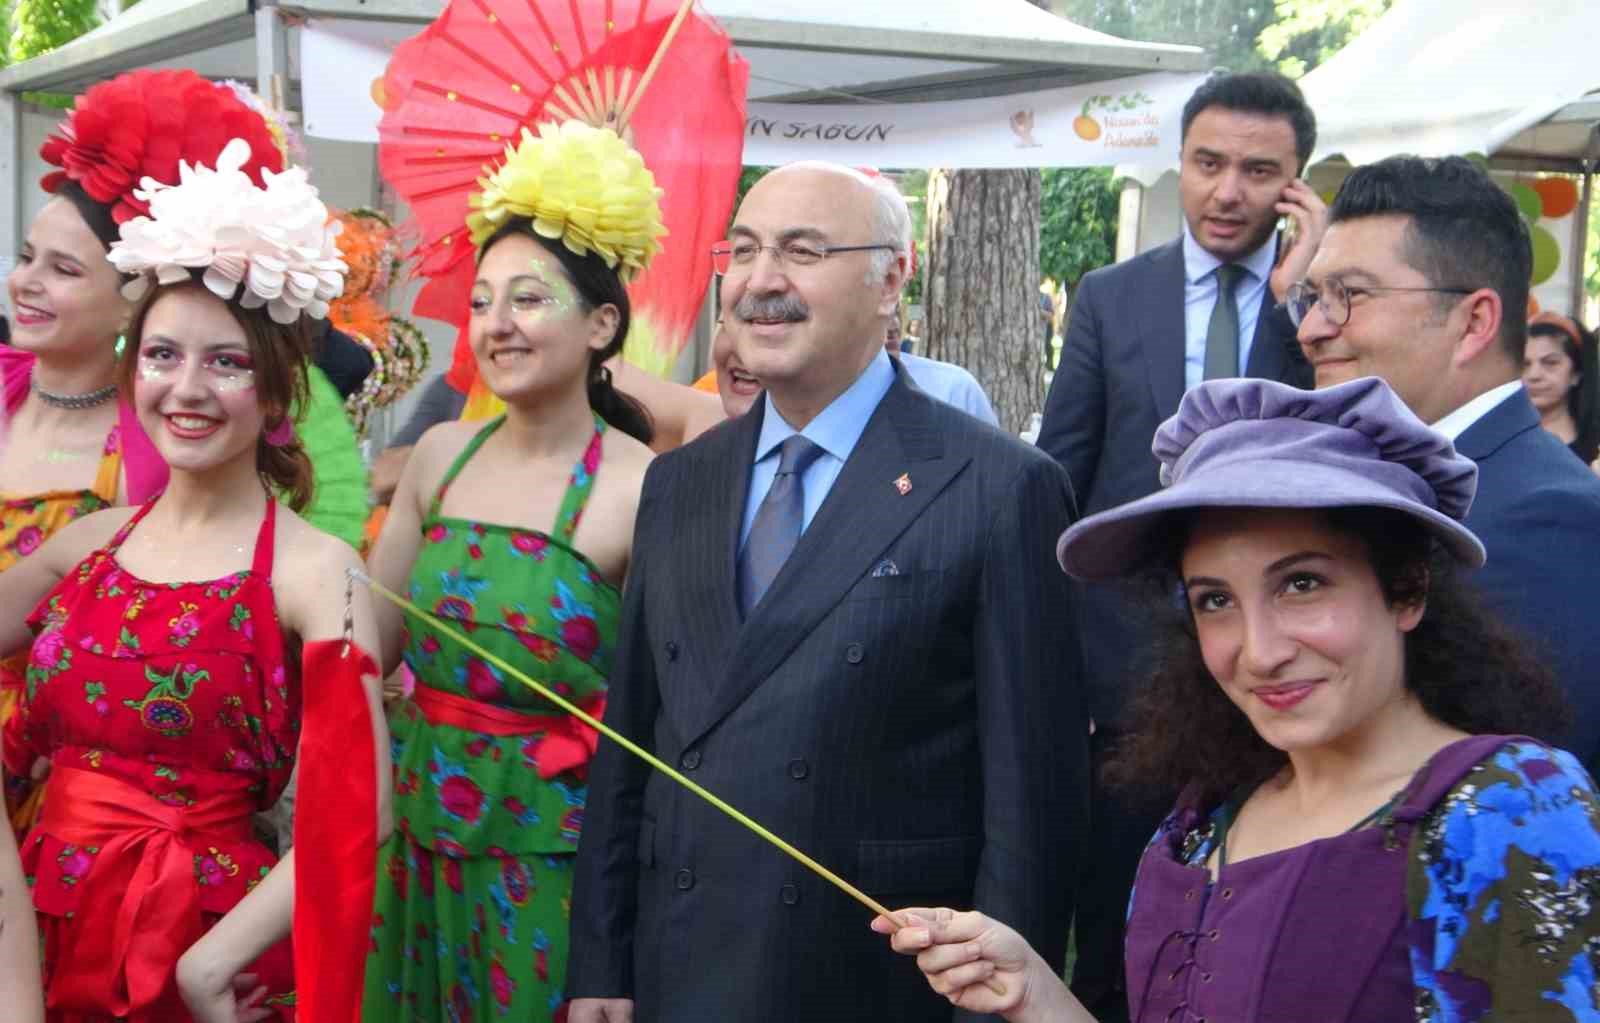 Vali Köşger: “Adana, Türkiye’nin festivaller kenti”